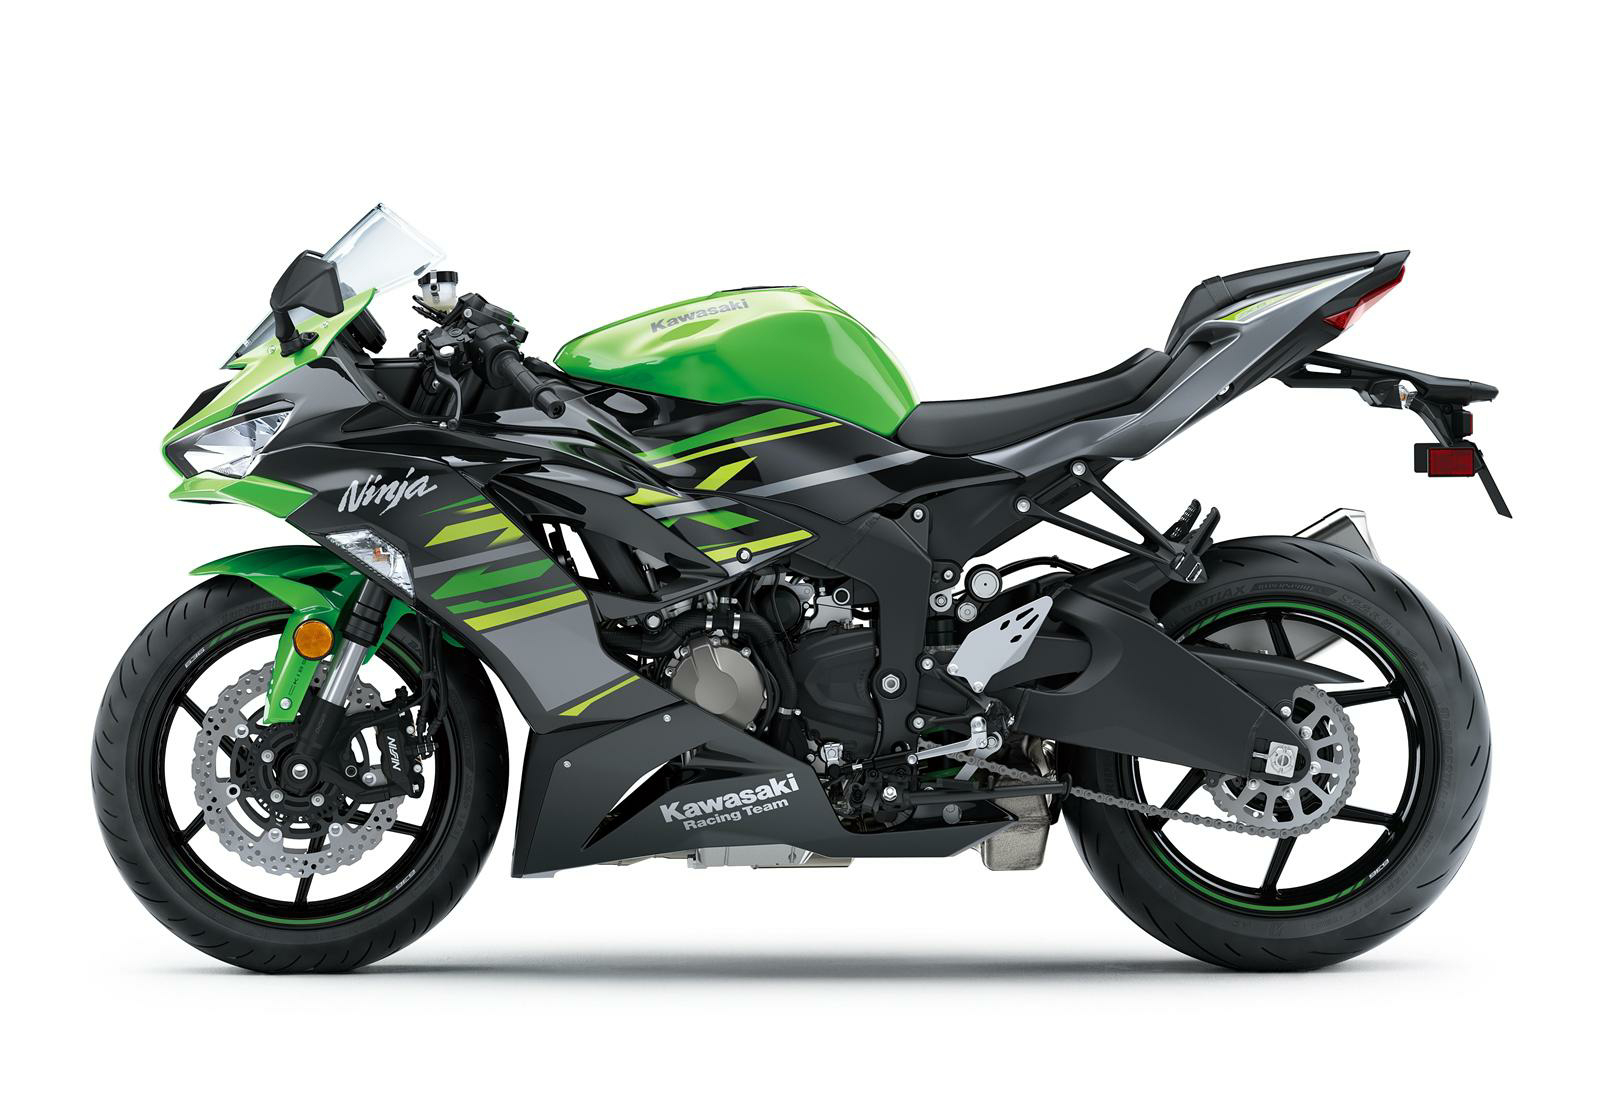 Kawasaki is all set to work on Ninja 700r with new